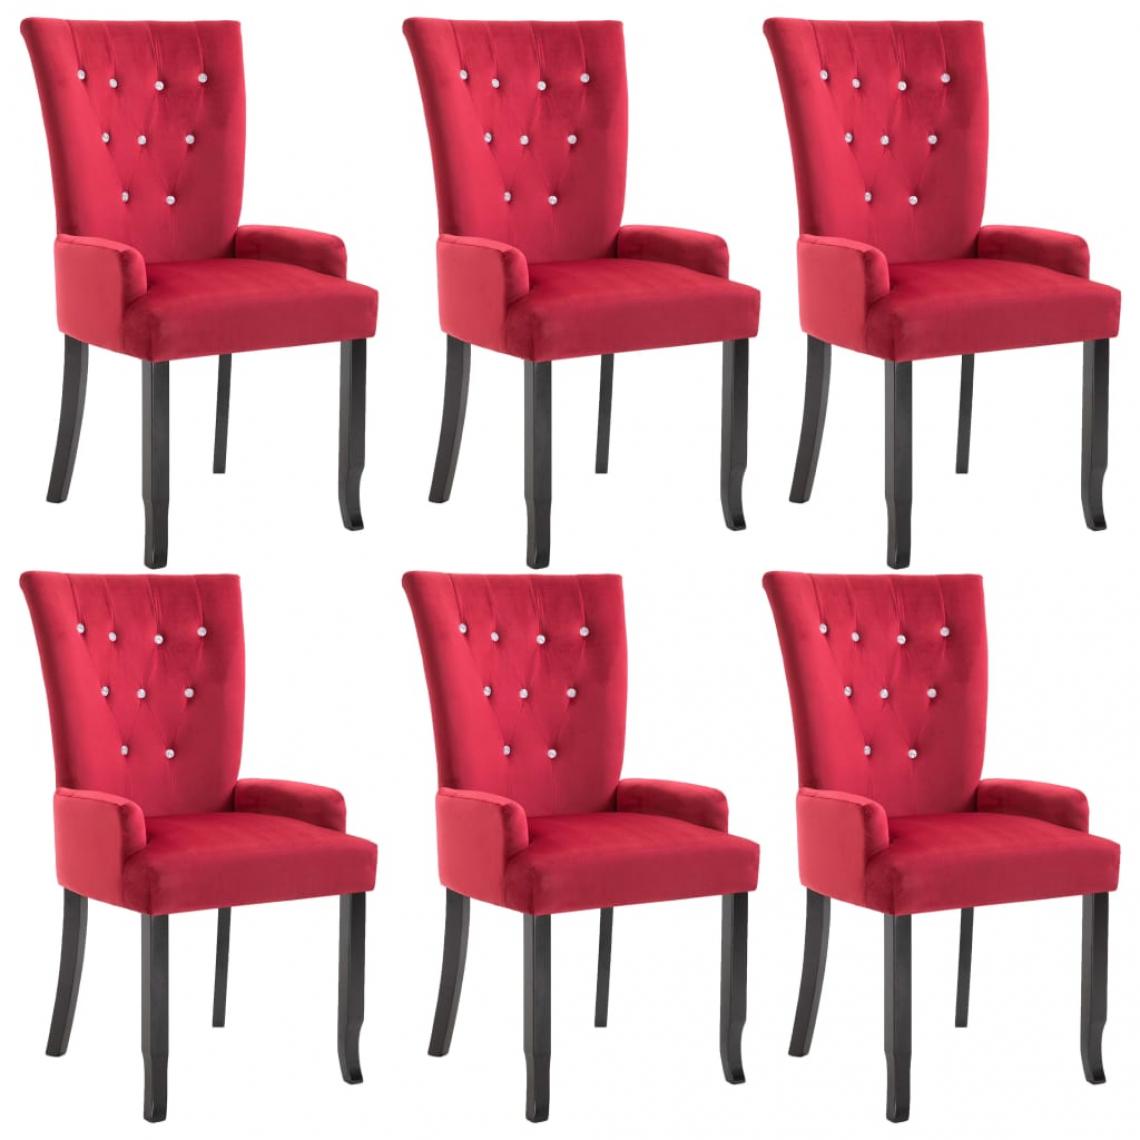 Decoshop26 - Lot de 6 chaises de salle à manger cuisine avec accoudoirs design classique velours rouge CDS022139 - Chaises